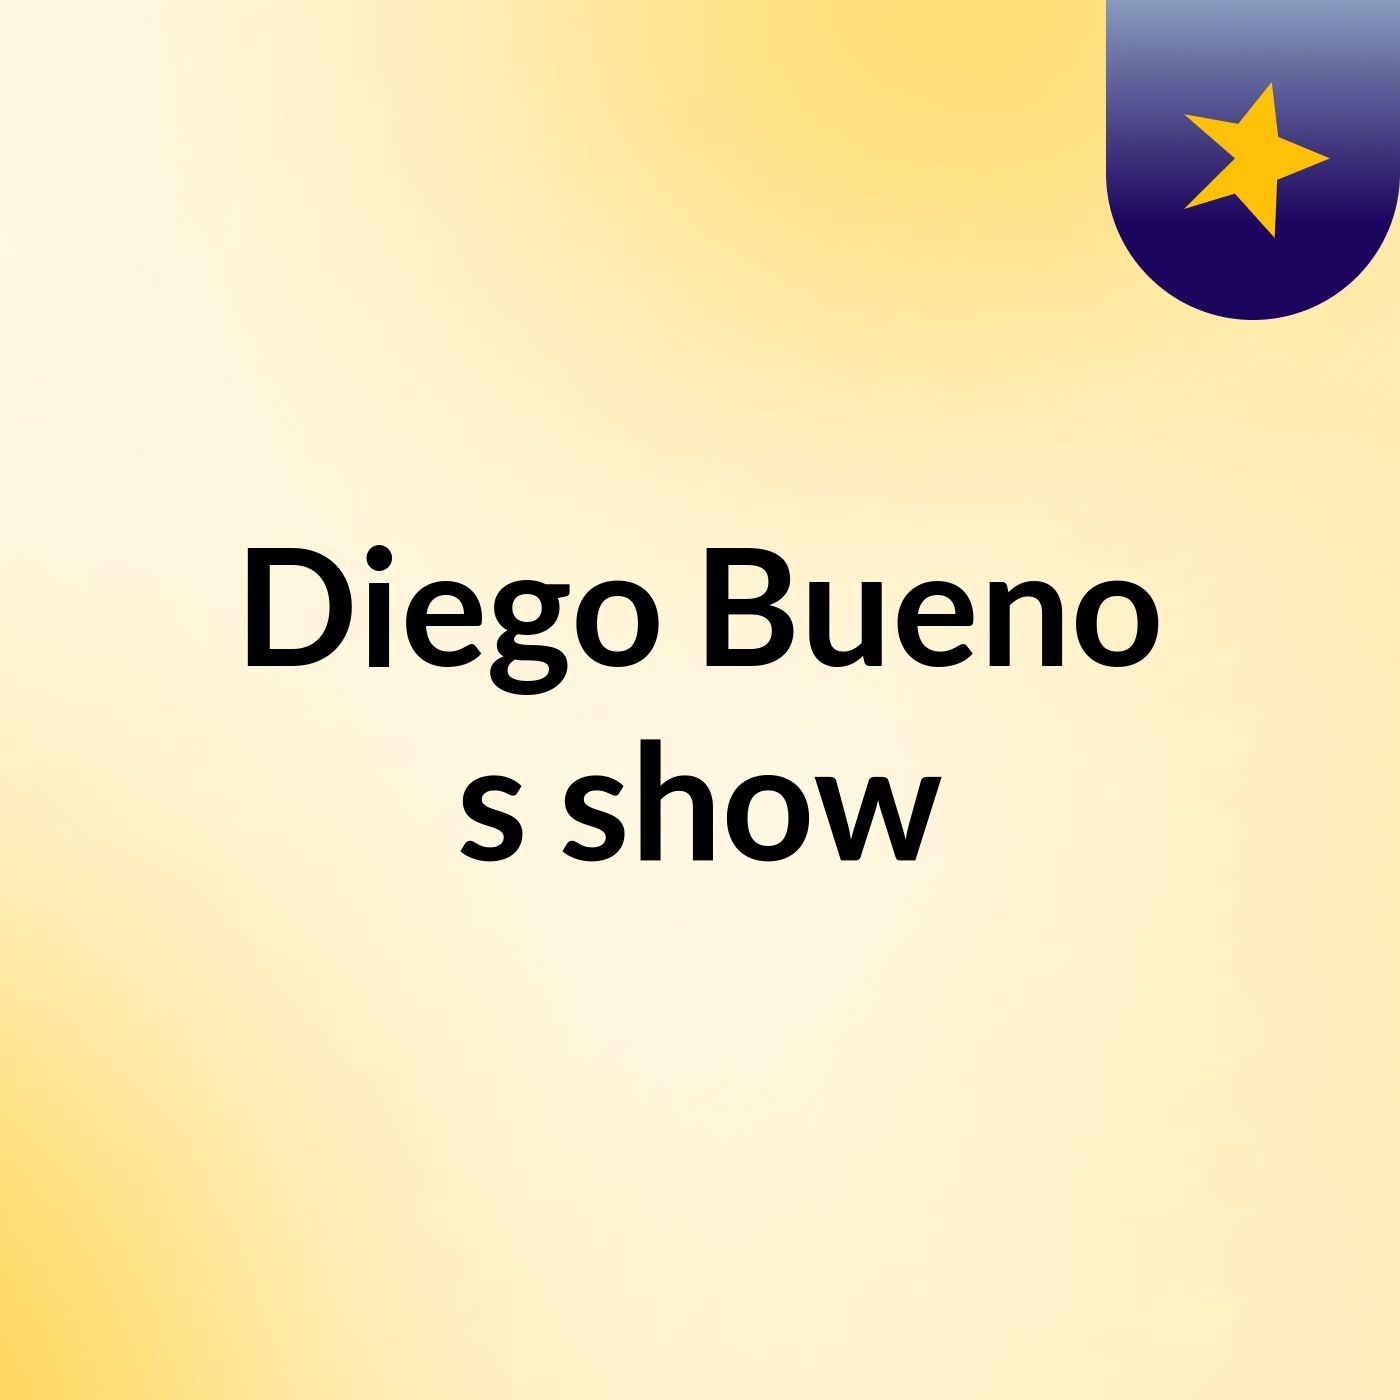 Diego Bueno's show